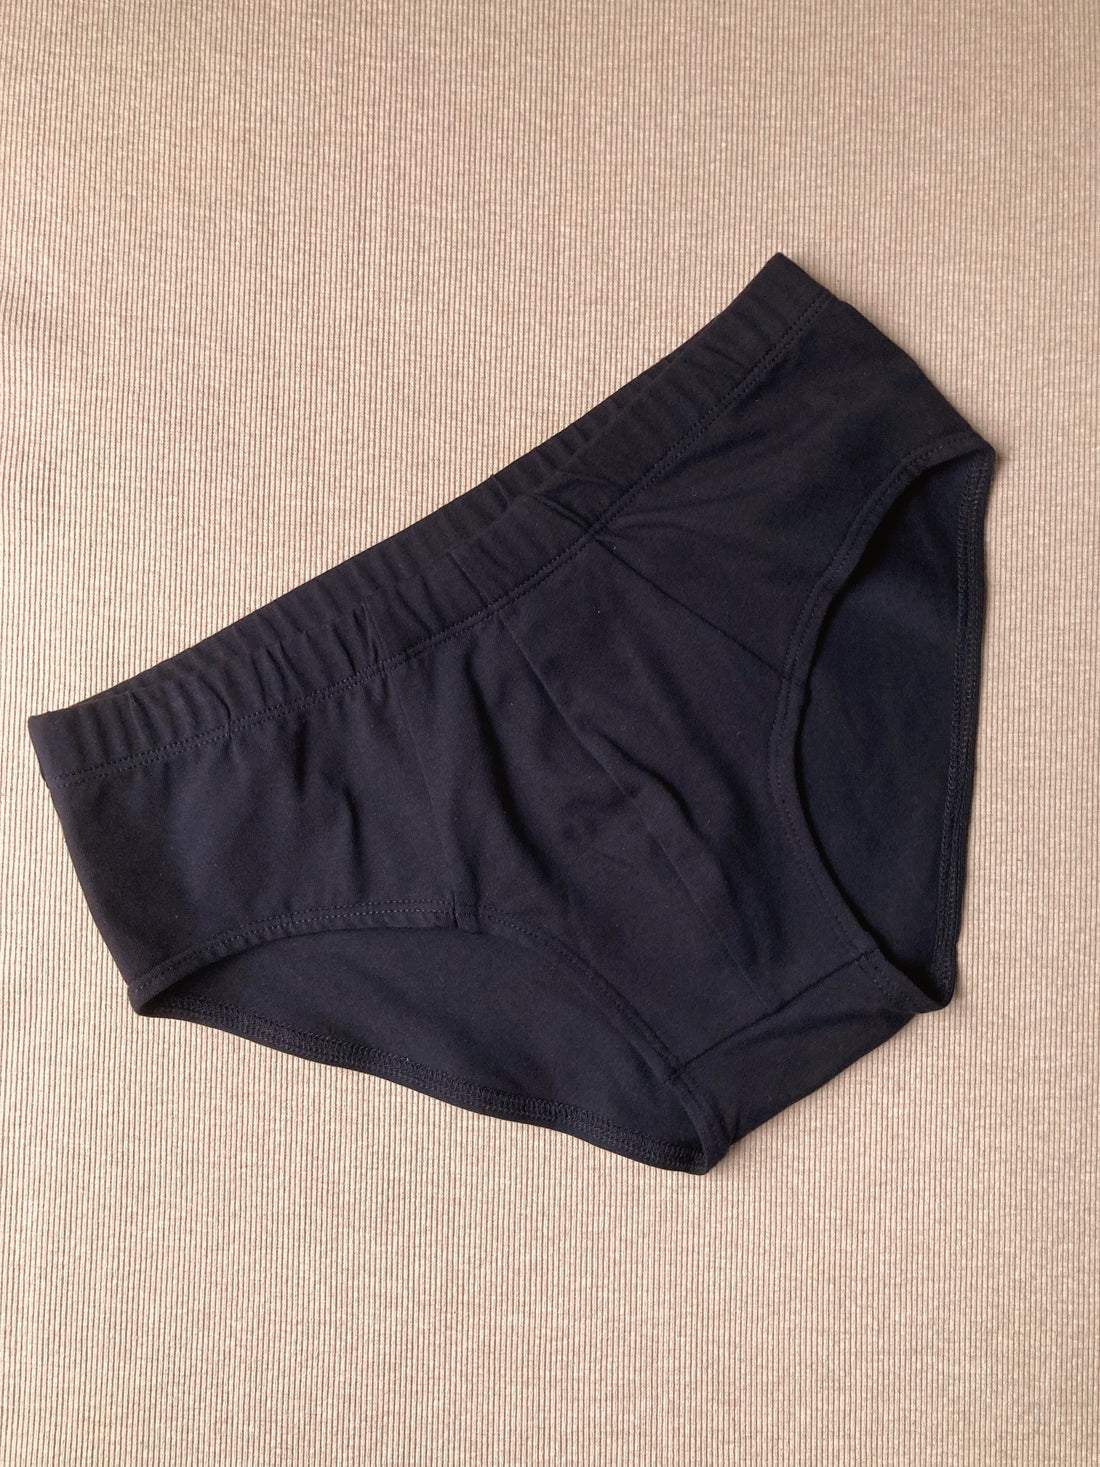 Men's underwear No6047m